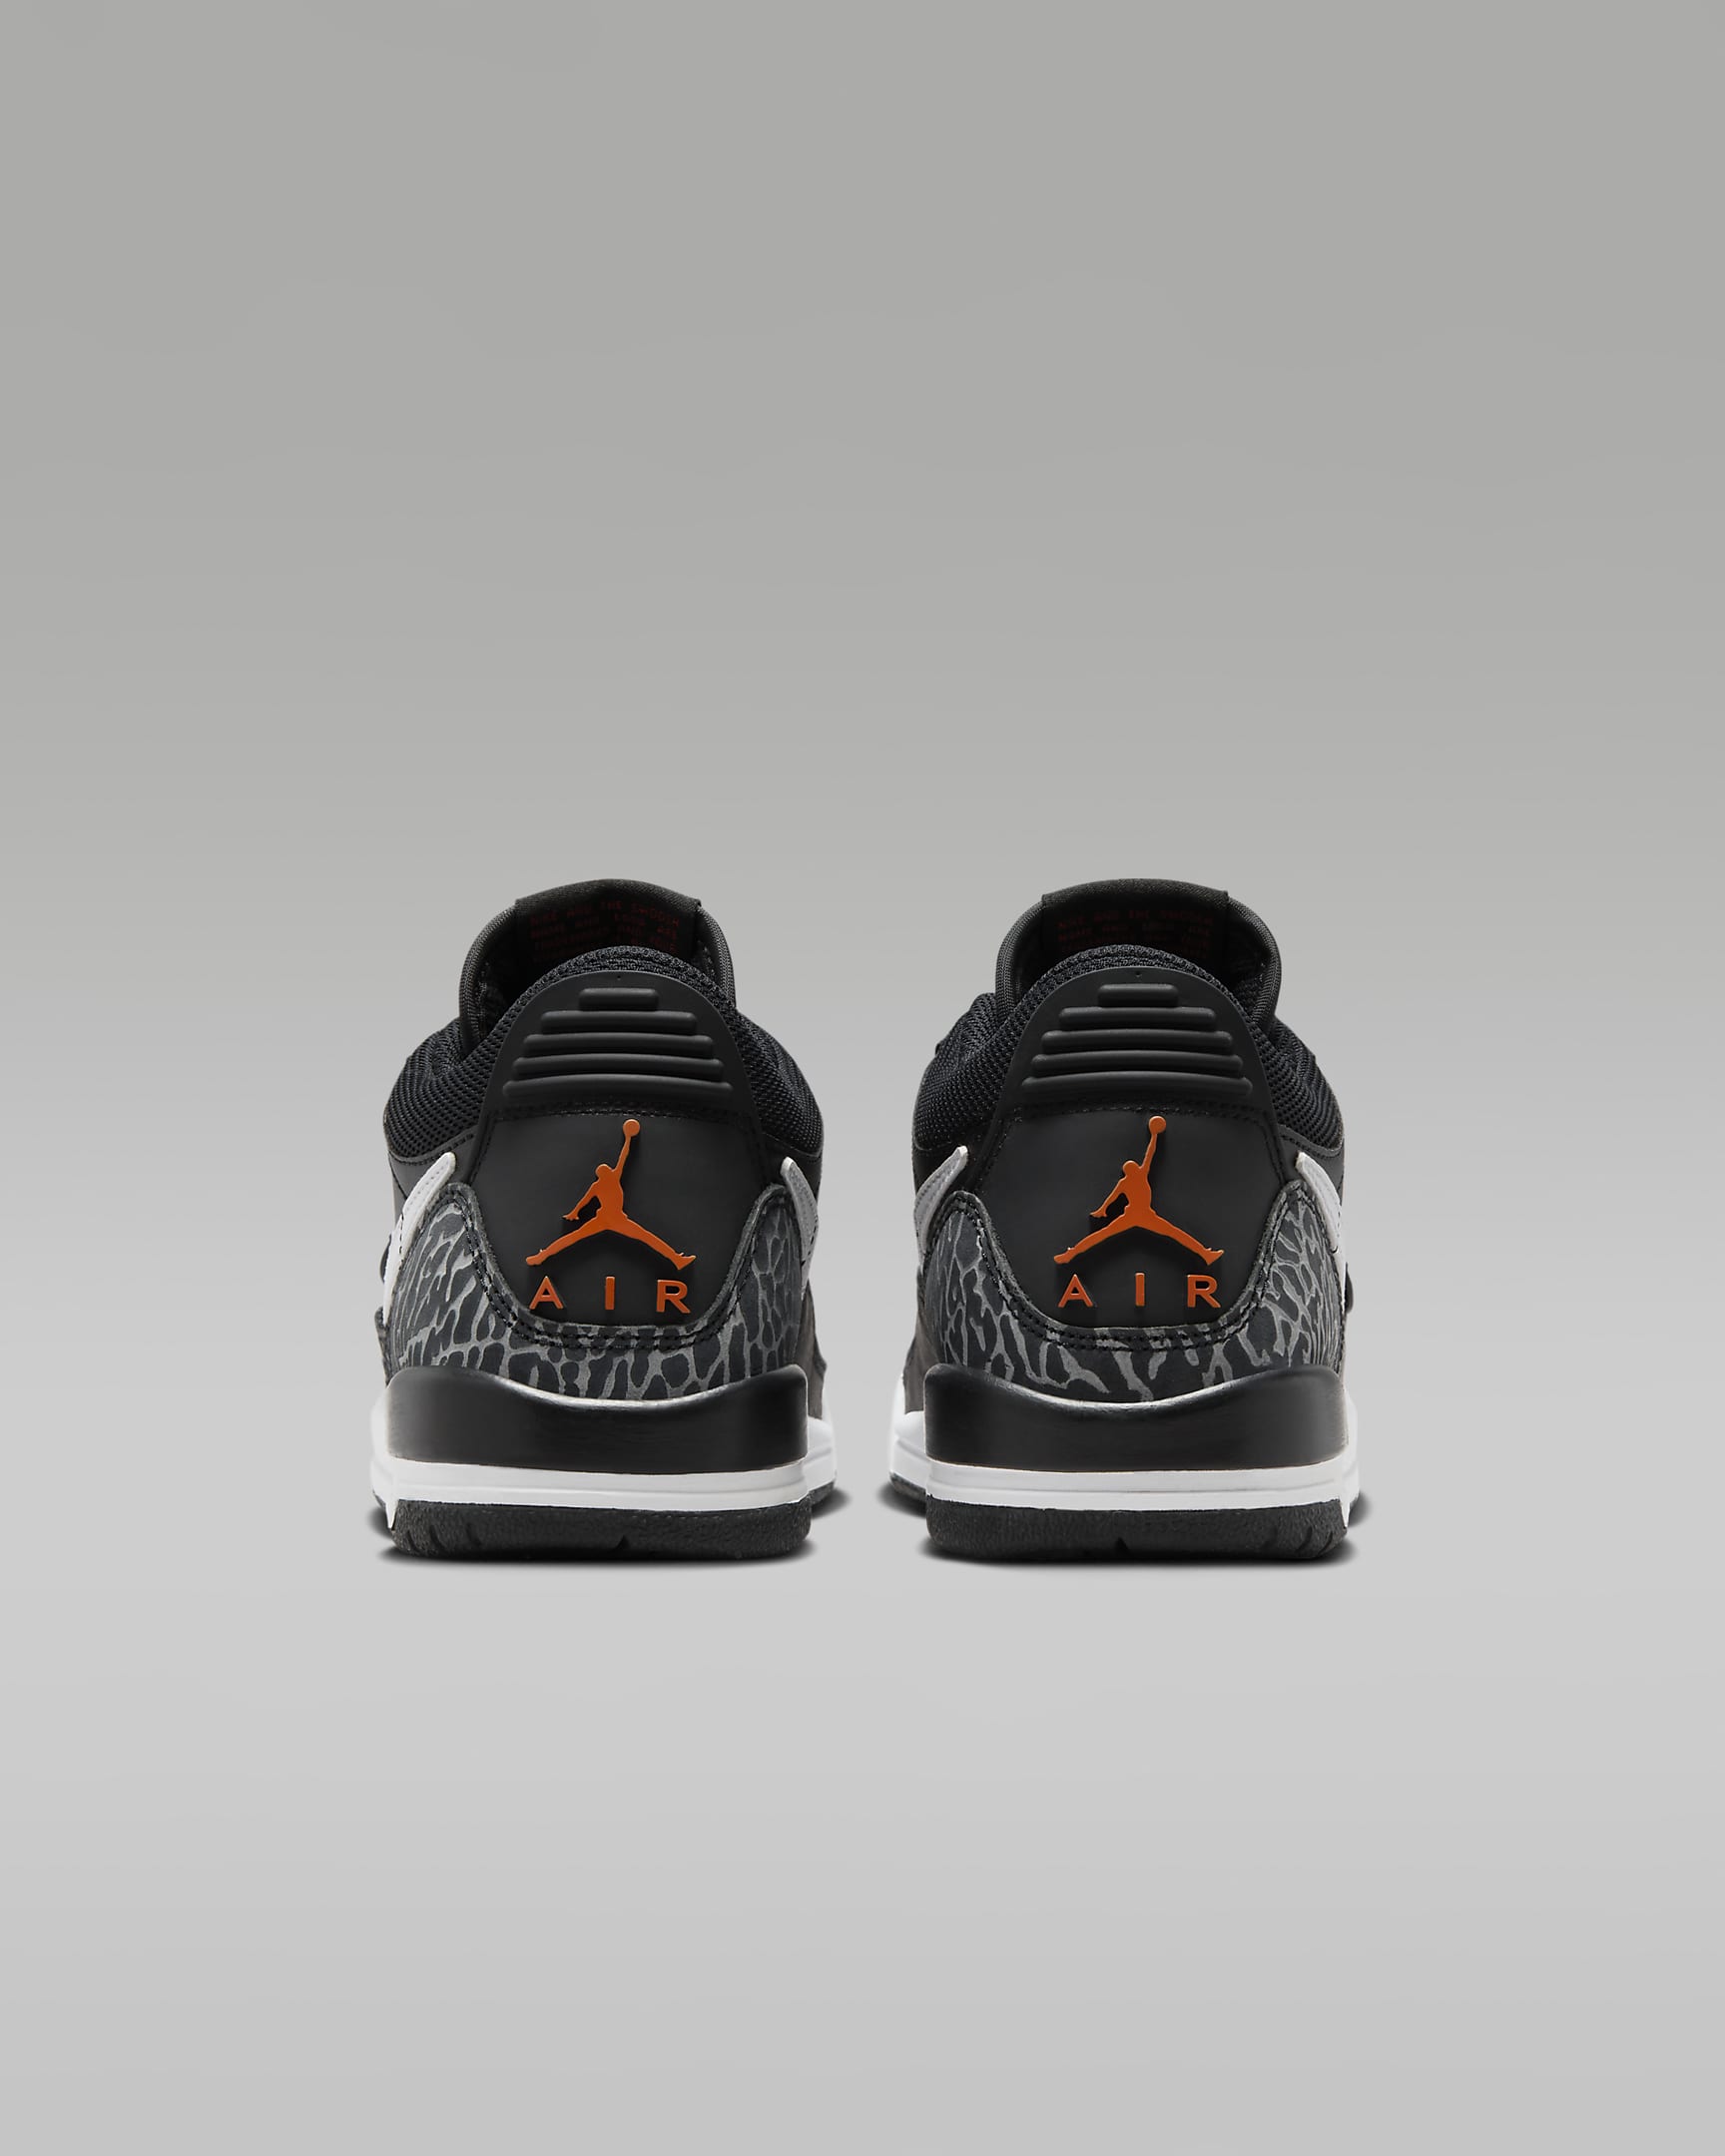 Air Jordan Legacy 312 Low Schuh für ältere Kinder - Schwarz/Wolf Grey/Safety Orange/Weiß